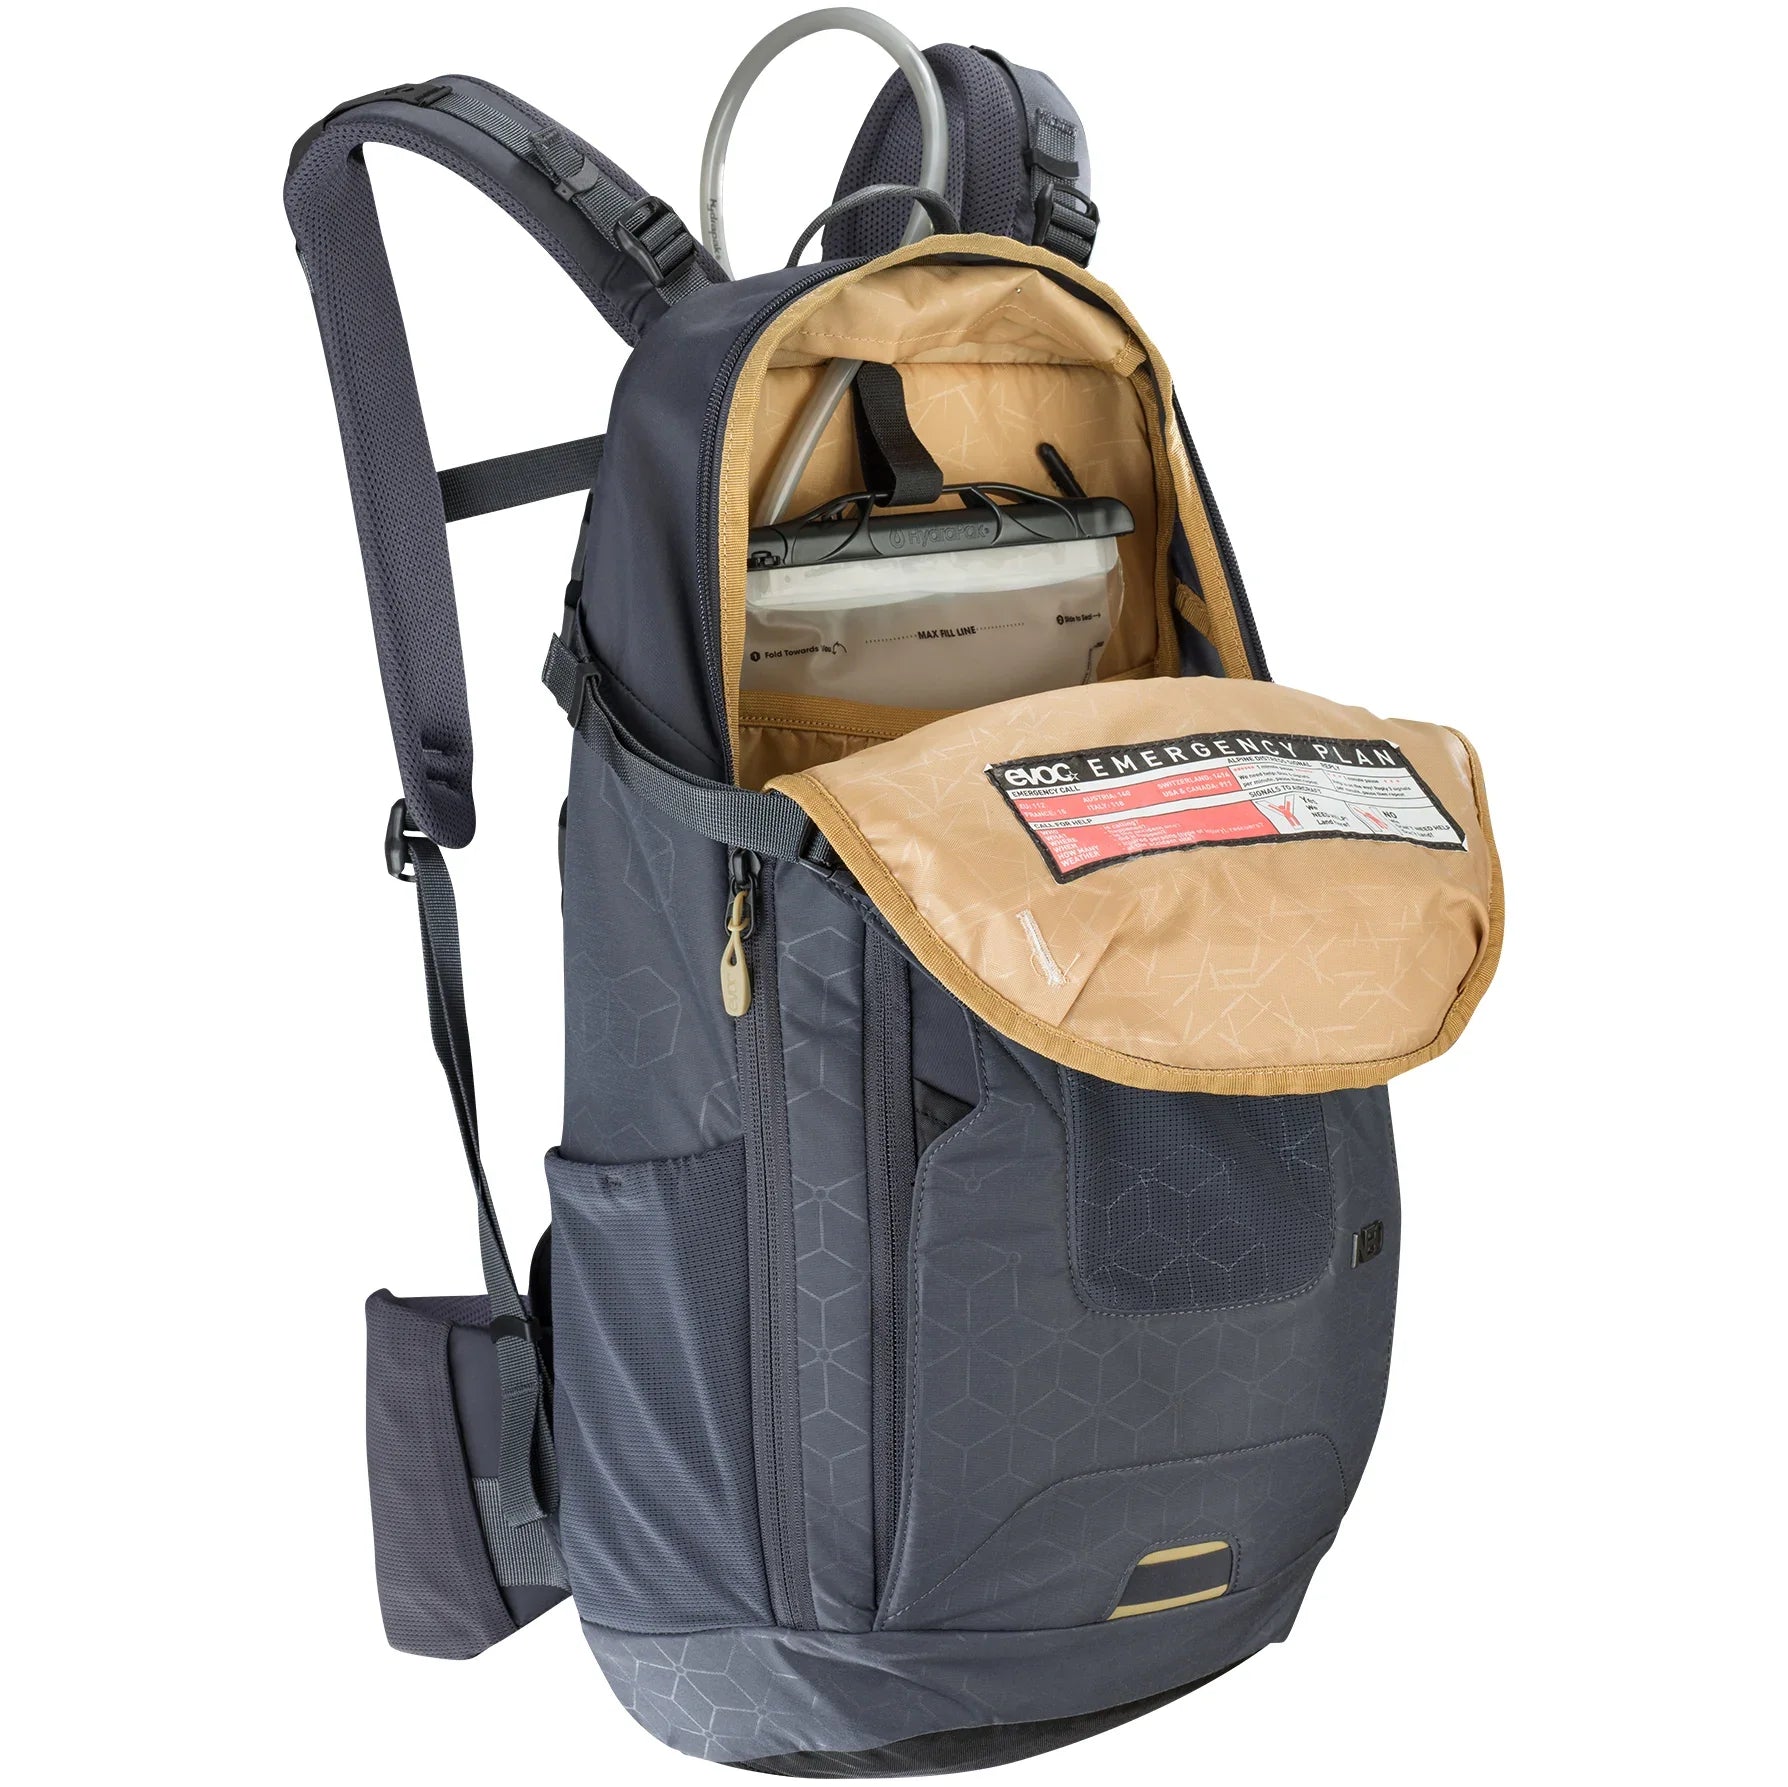 Evoc Protector Backpacks Sac à dos Neo L/XL 57 cm - gris carbone